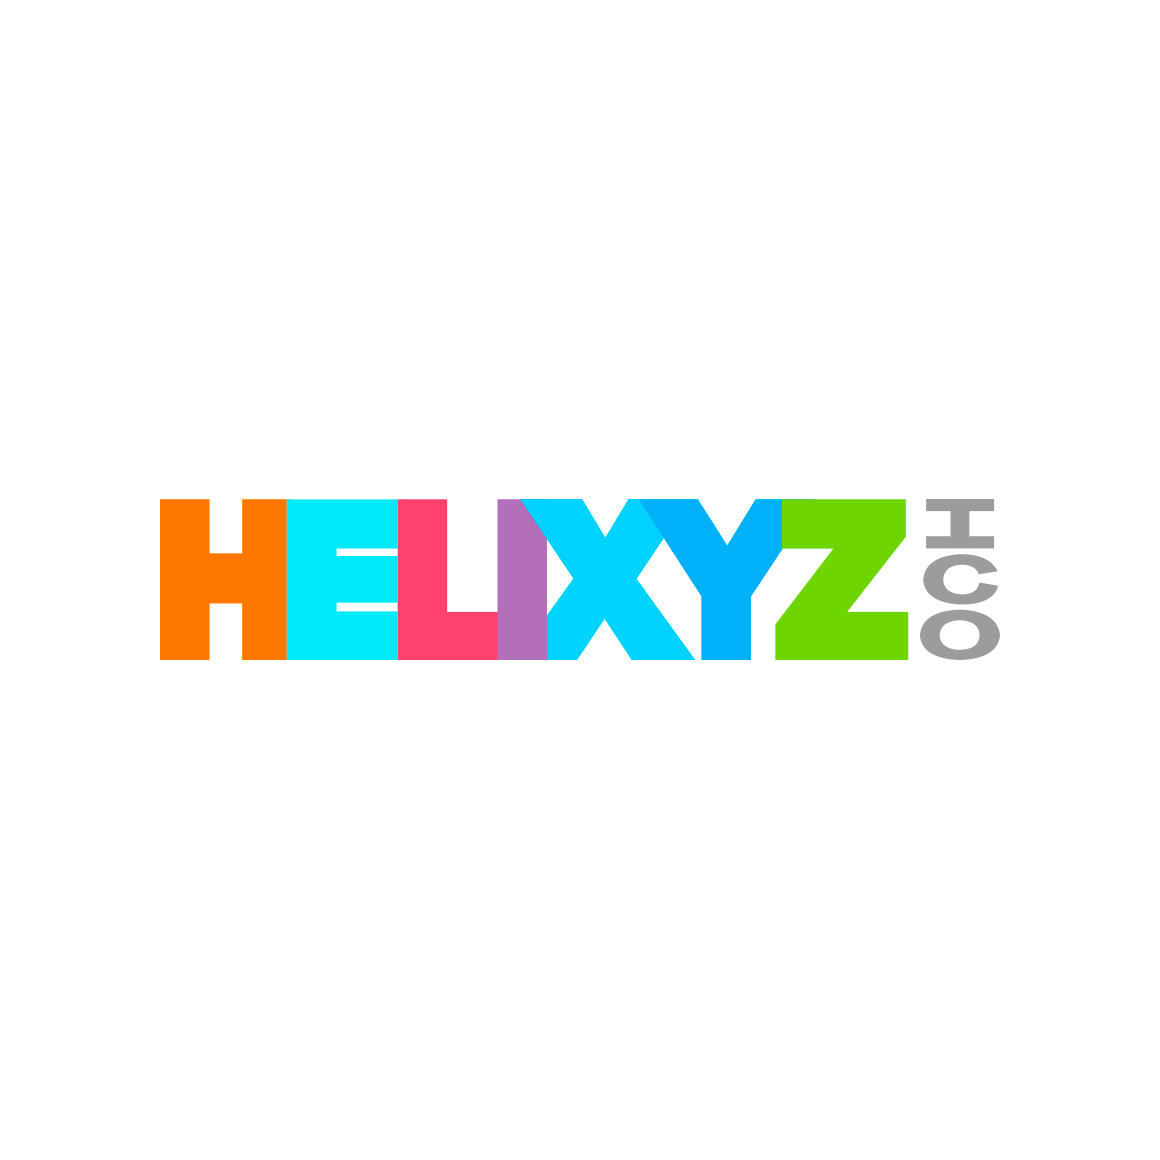 Helixyz ICO